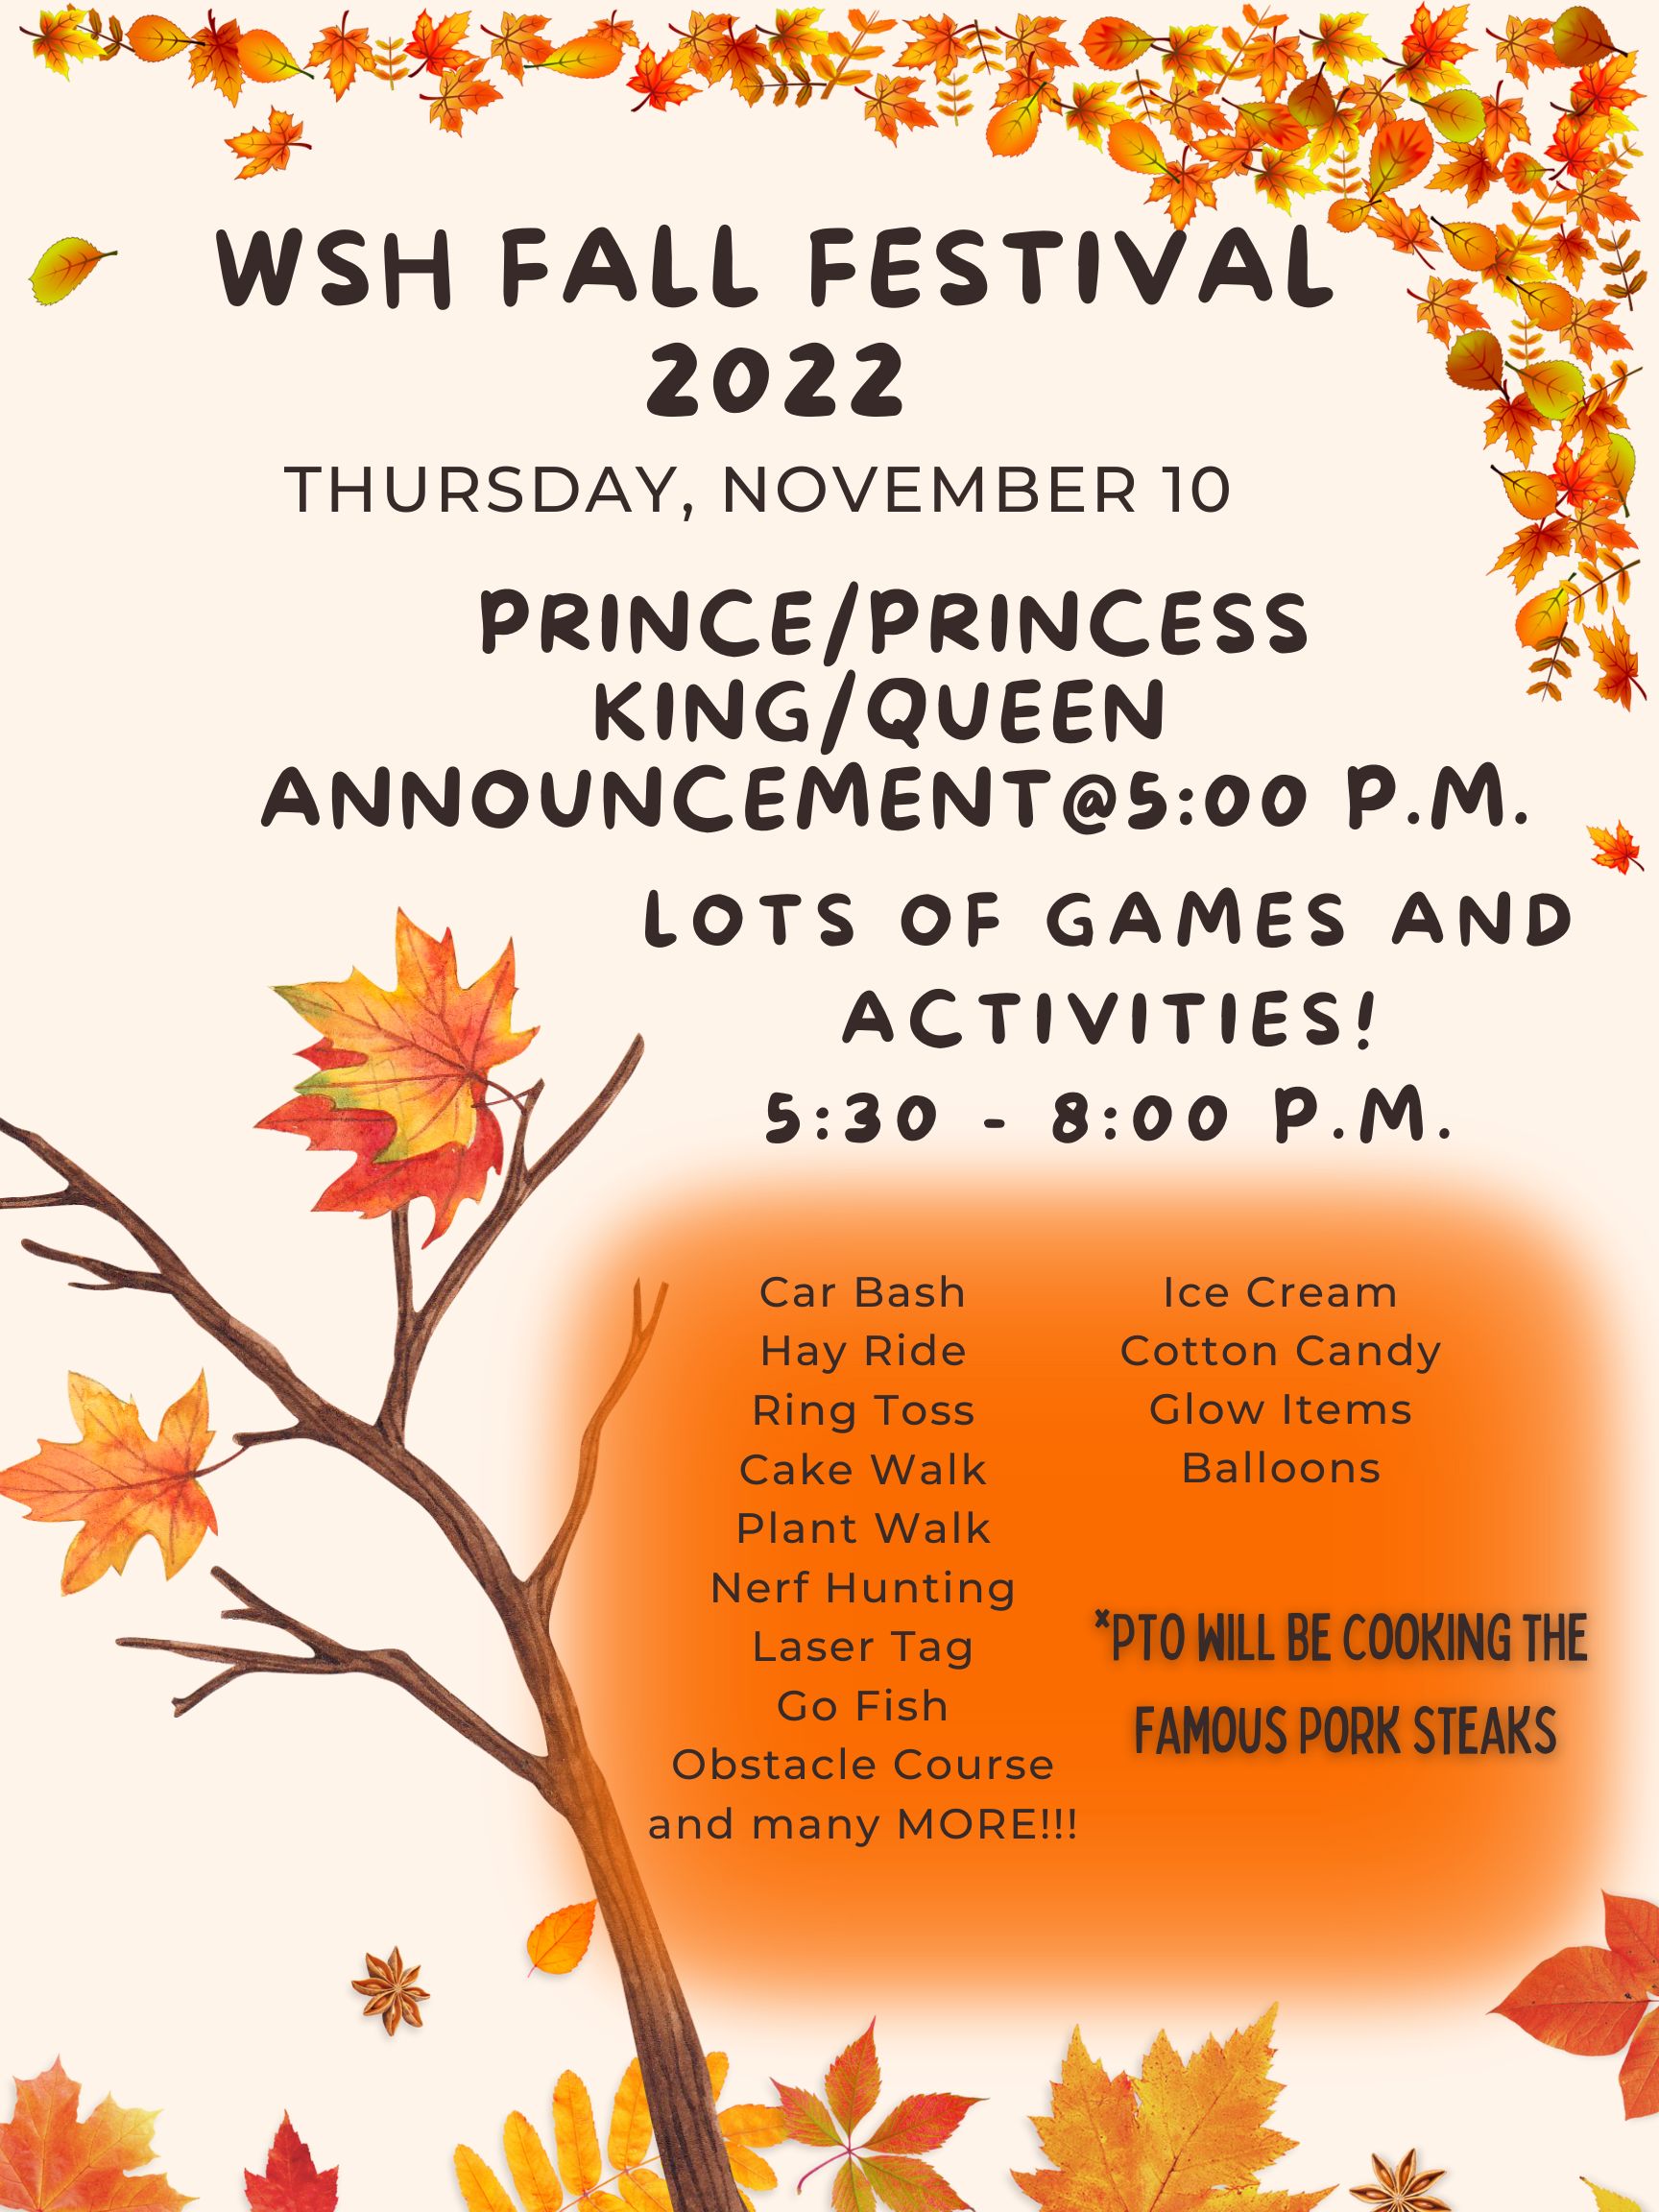 WSH Fall Festival 2022